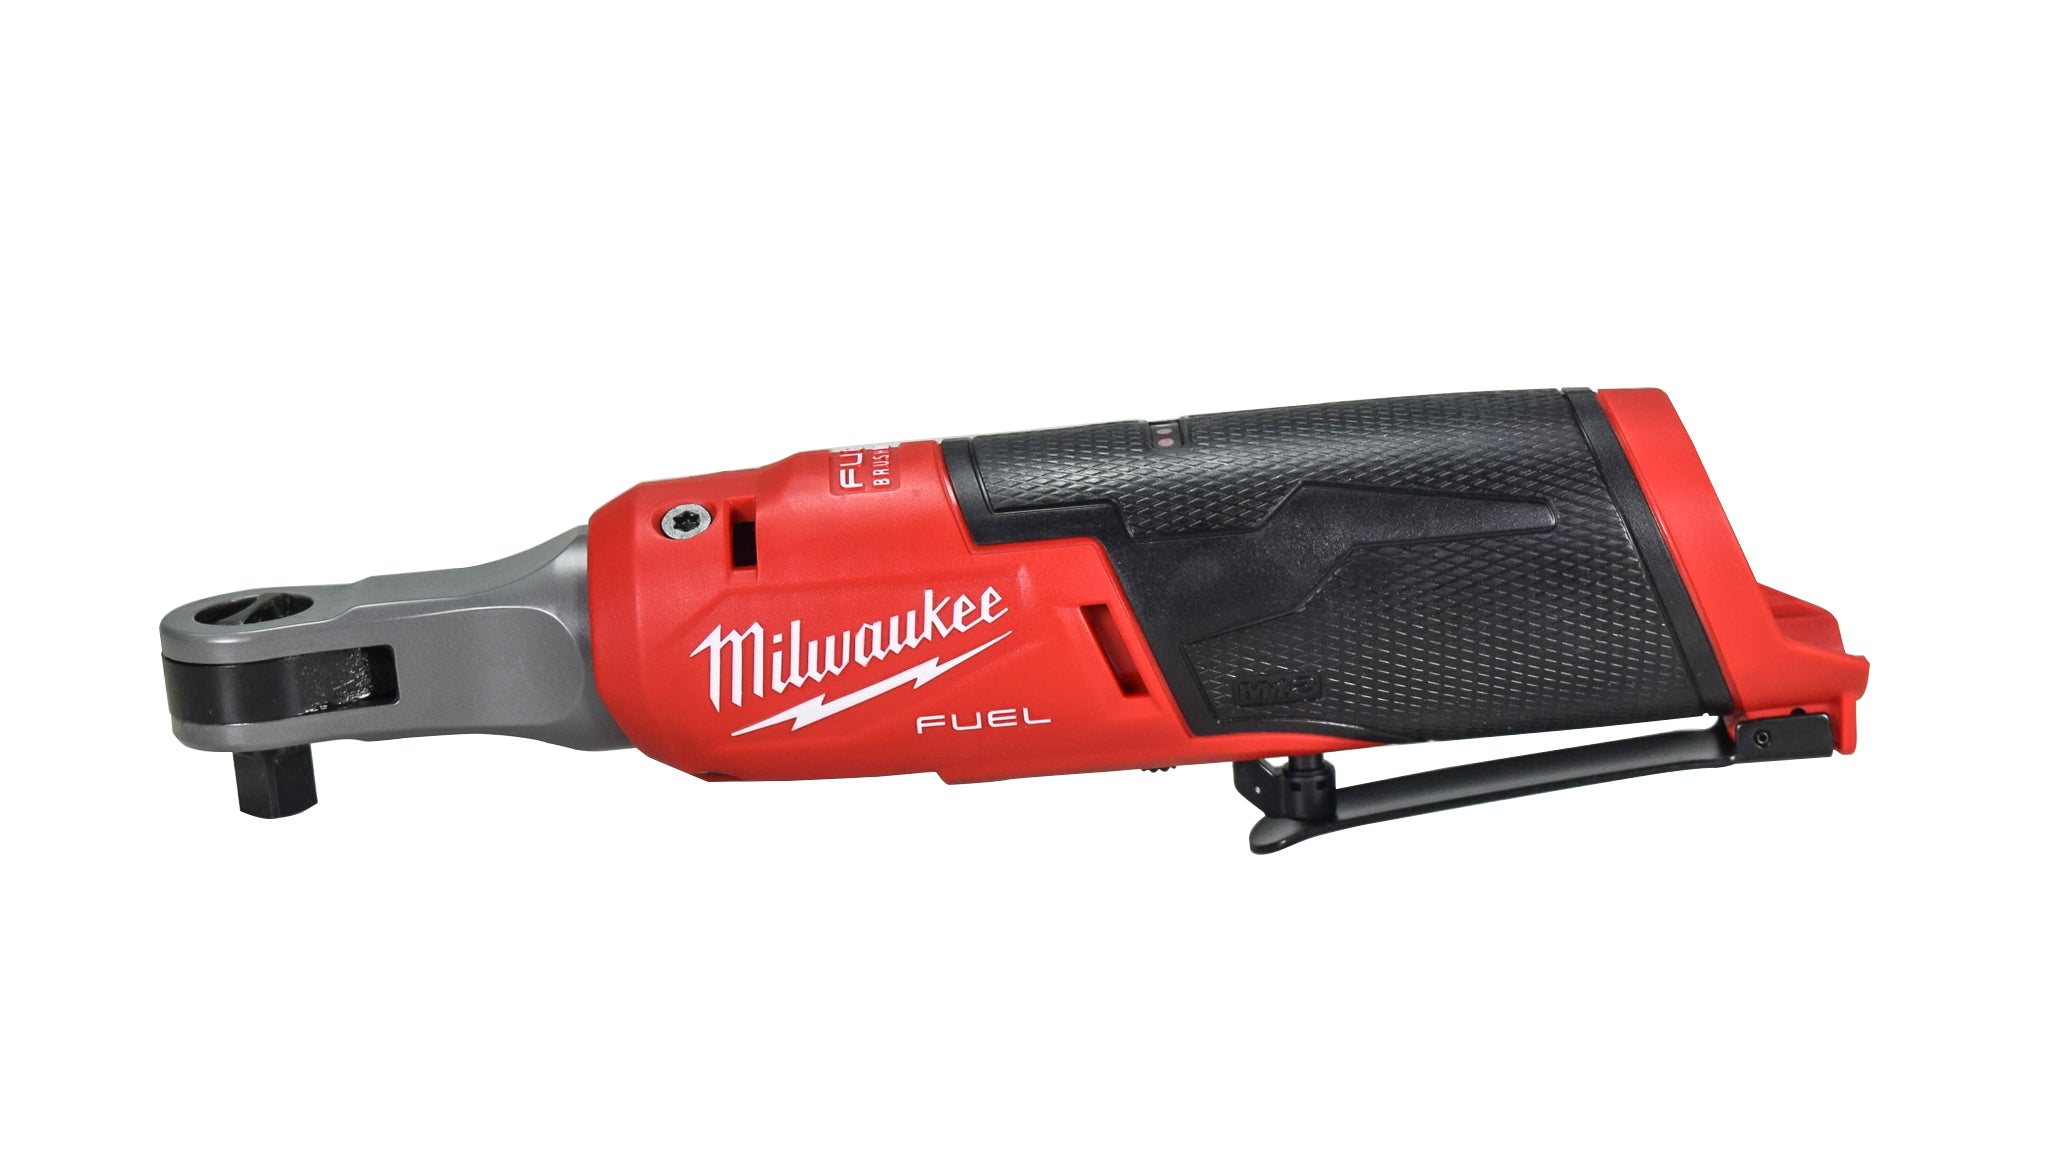 Milwaukee 2567-22 M12 3/8" High-Speed Ratchet Kit